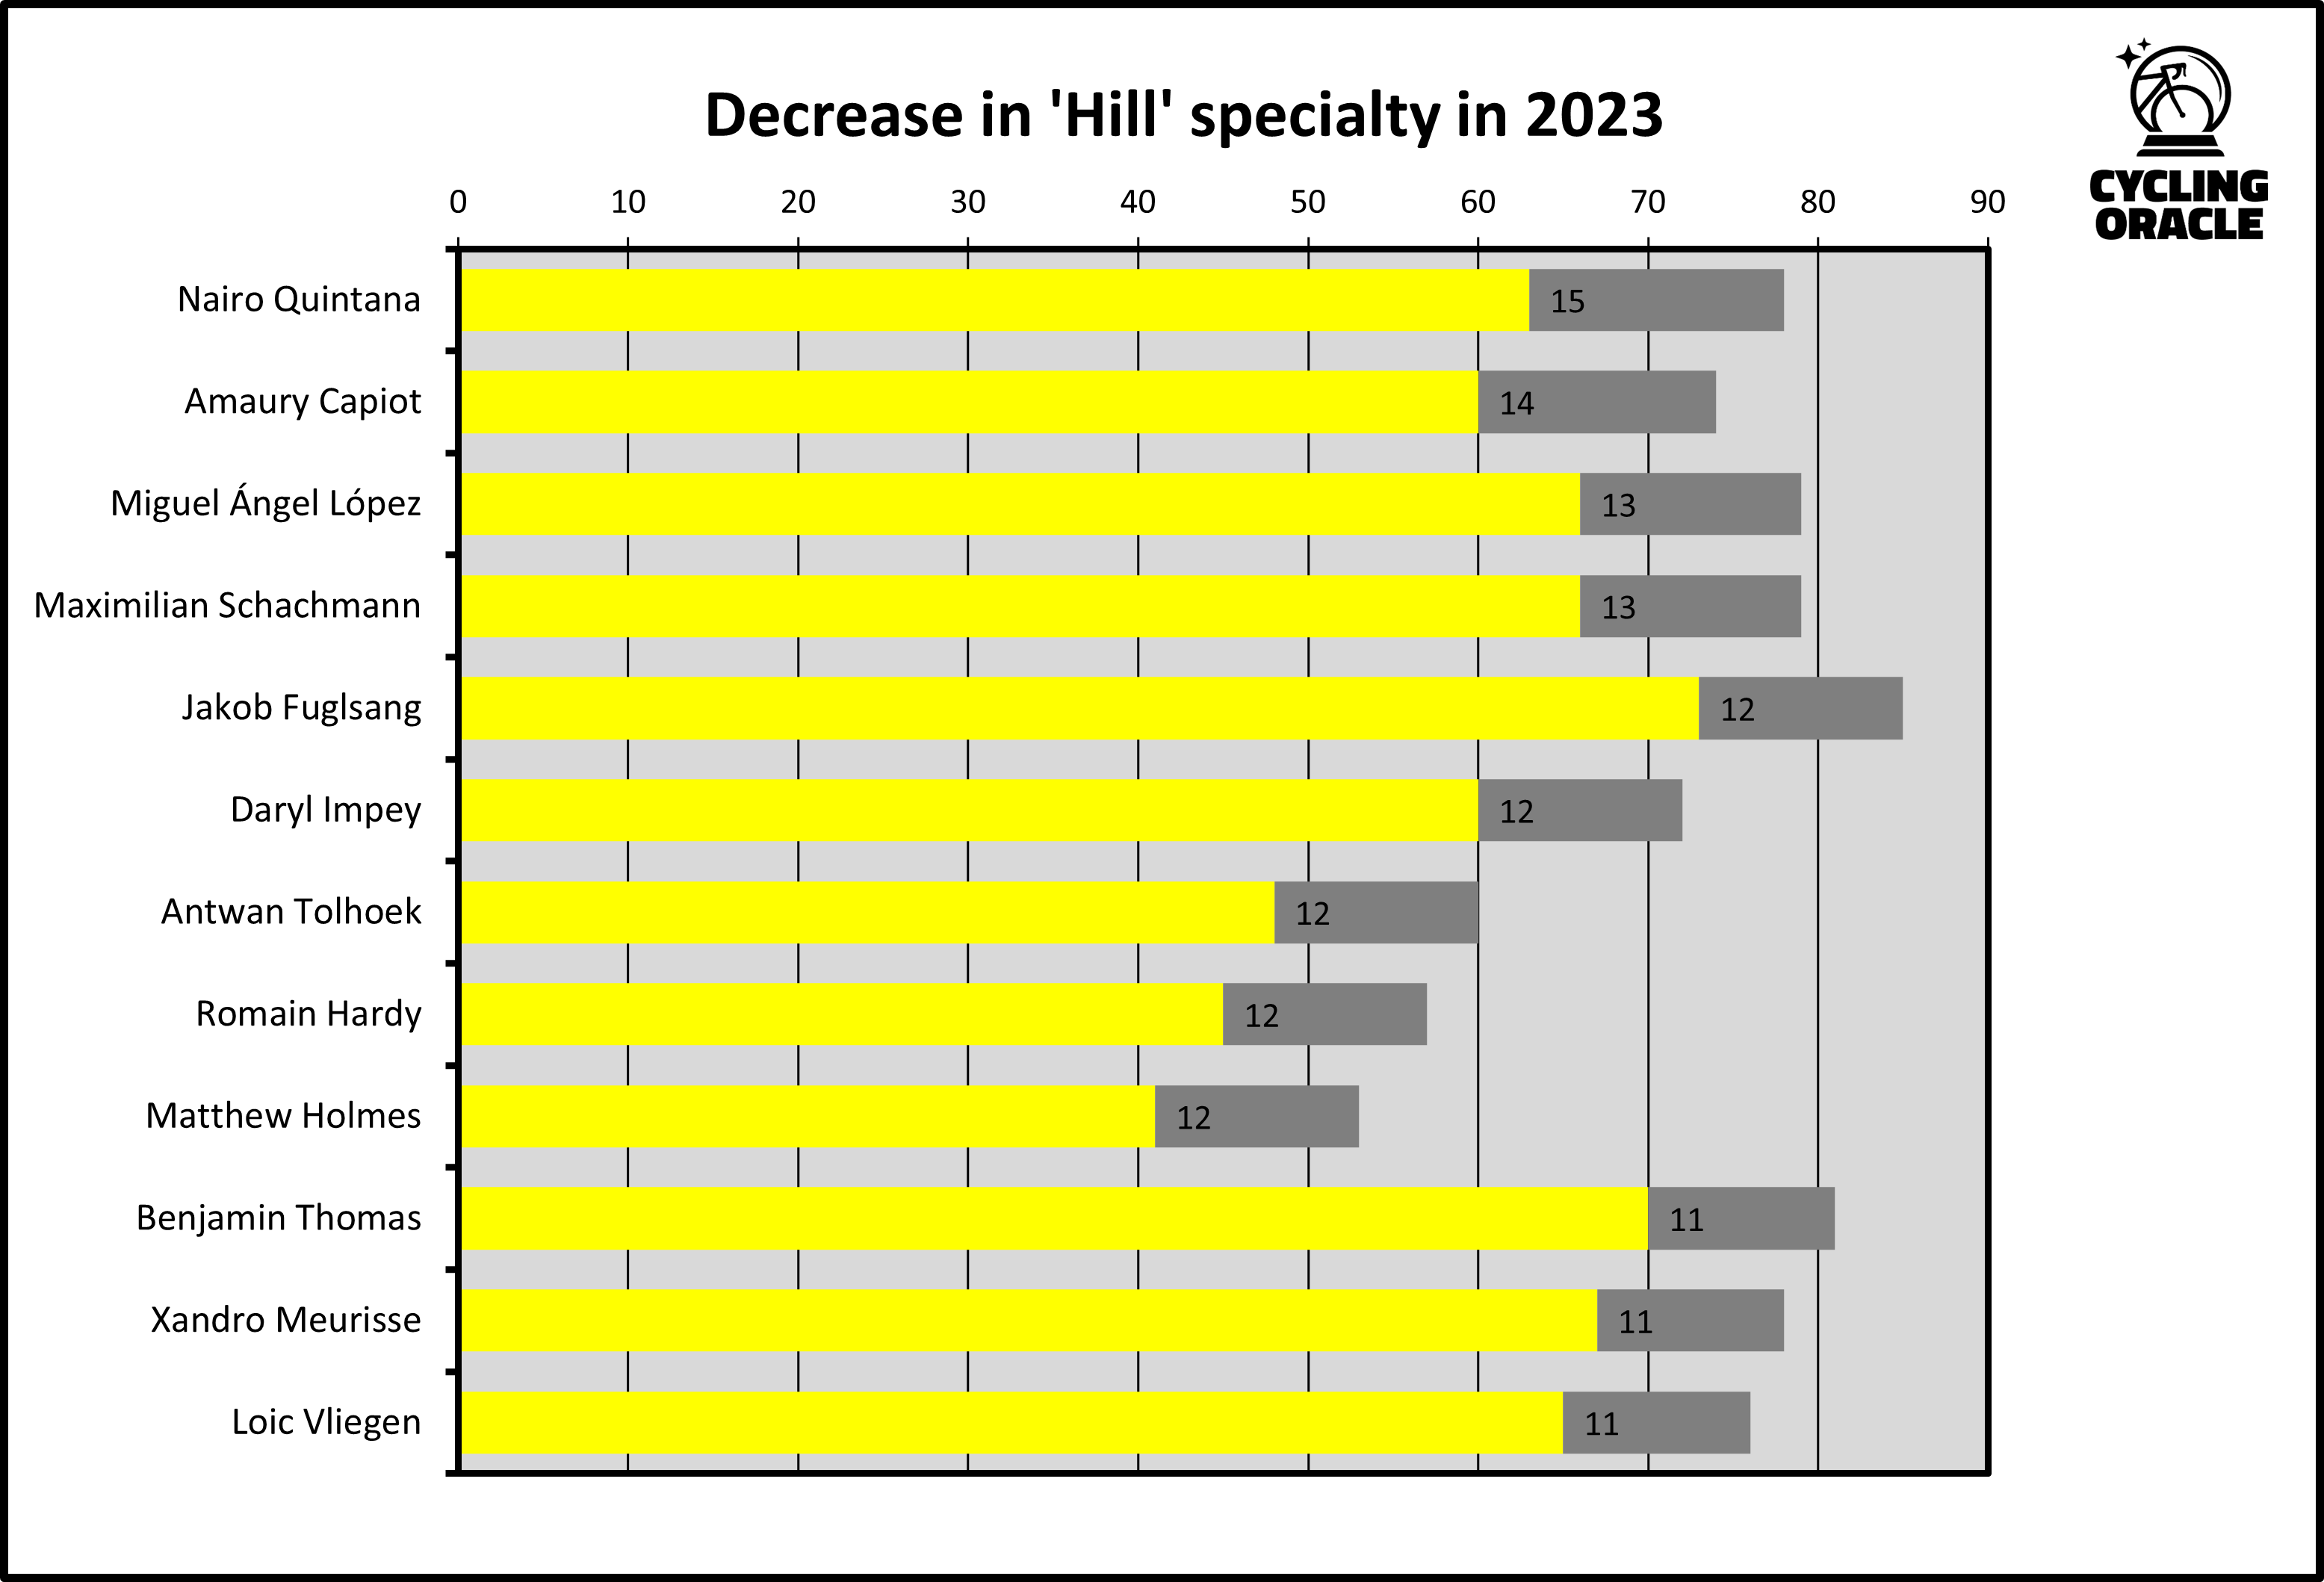 Renners die de meeste punten verloren op 'Hill' in 2023